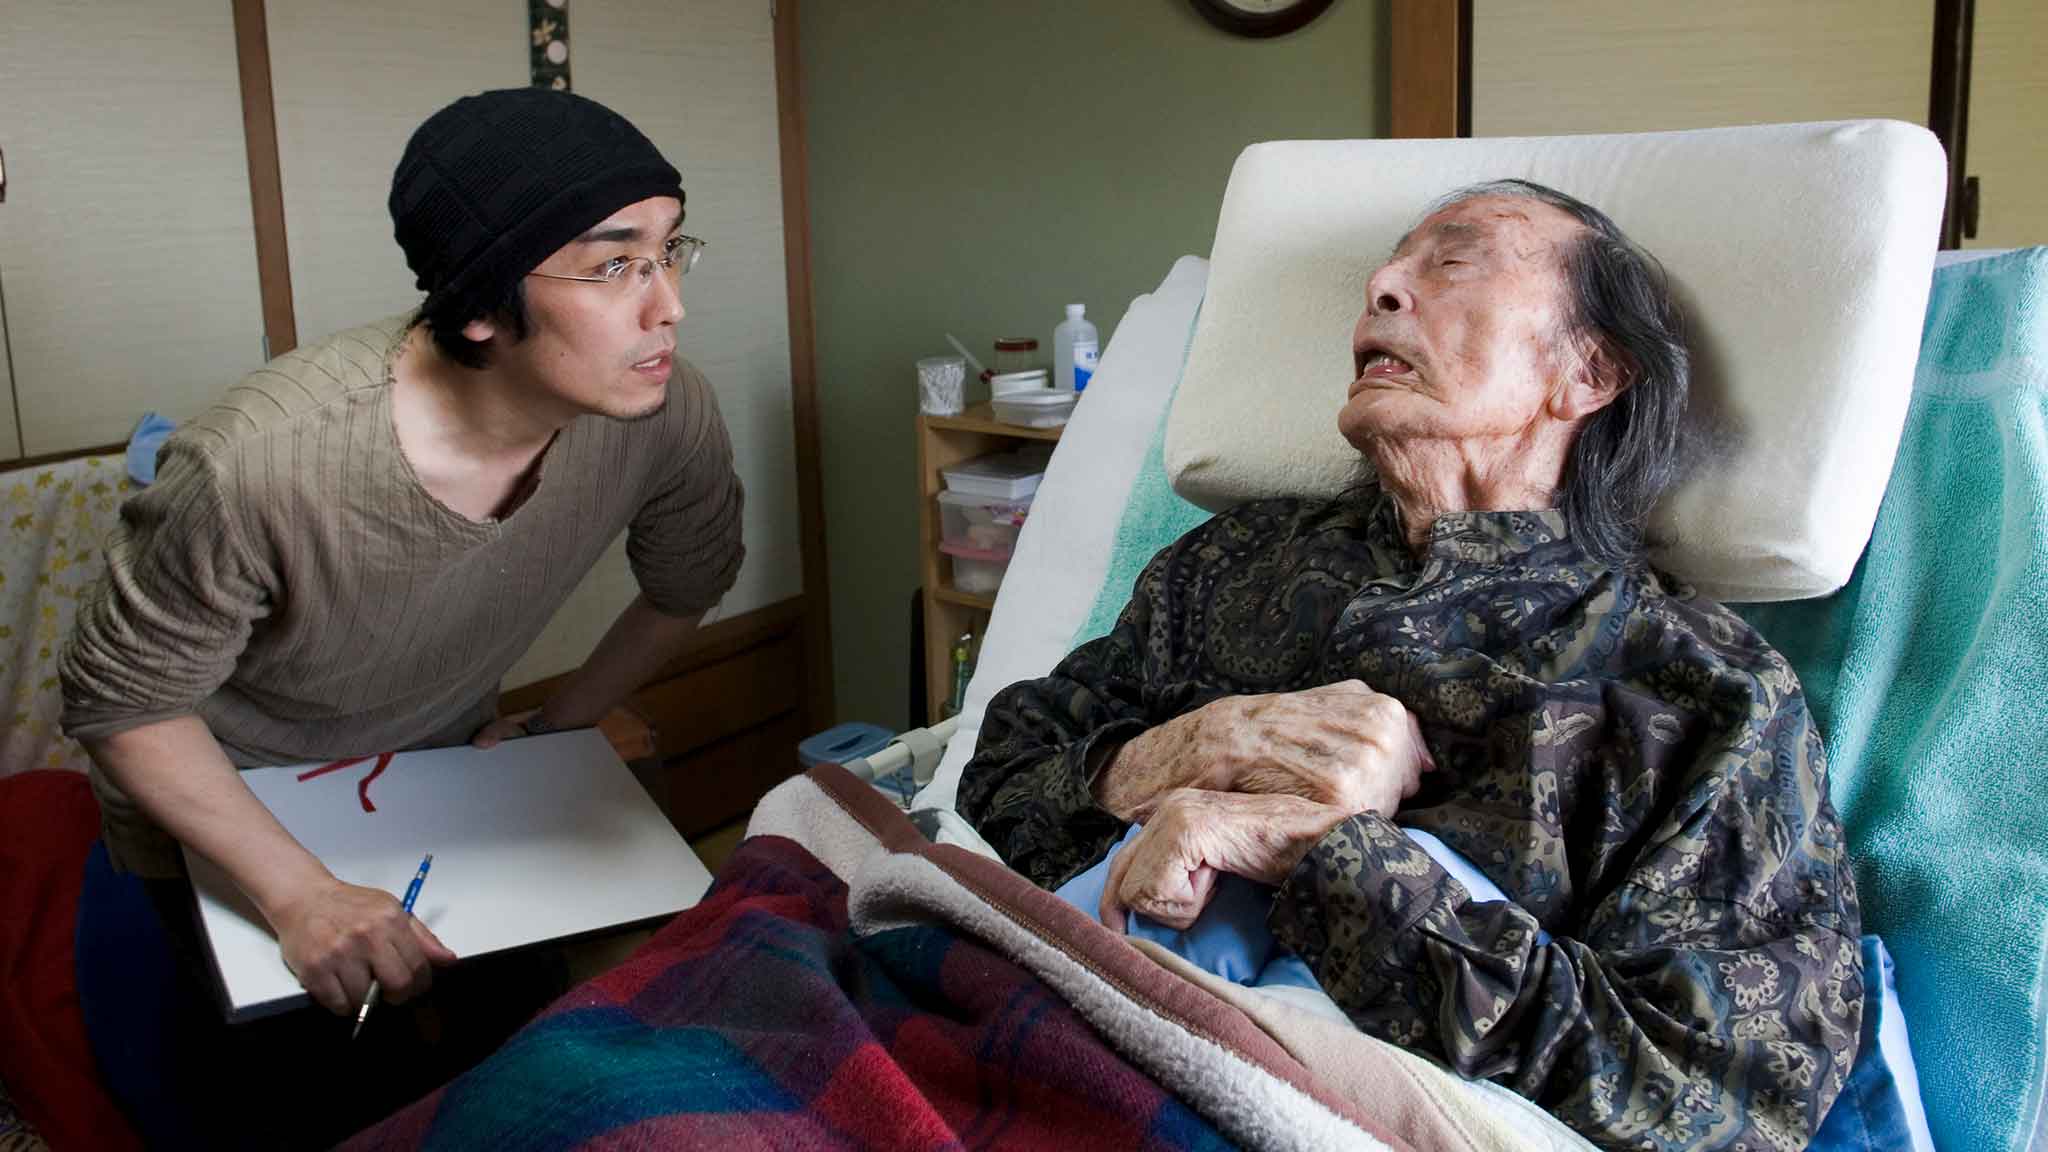 諏訪敦（左）拜訪了100多歲需要護理照顧的現代舞蹈藝術家大野一雄，並進行了素描和採訪工作。 照片於2006 年 12 月 28 日由川本聖哉拍攝